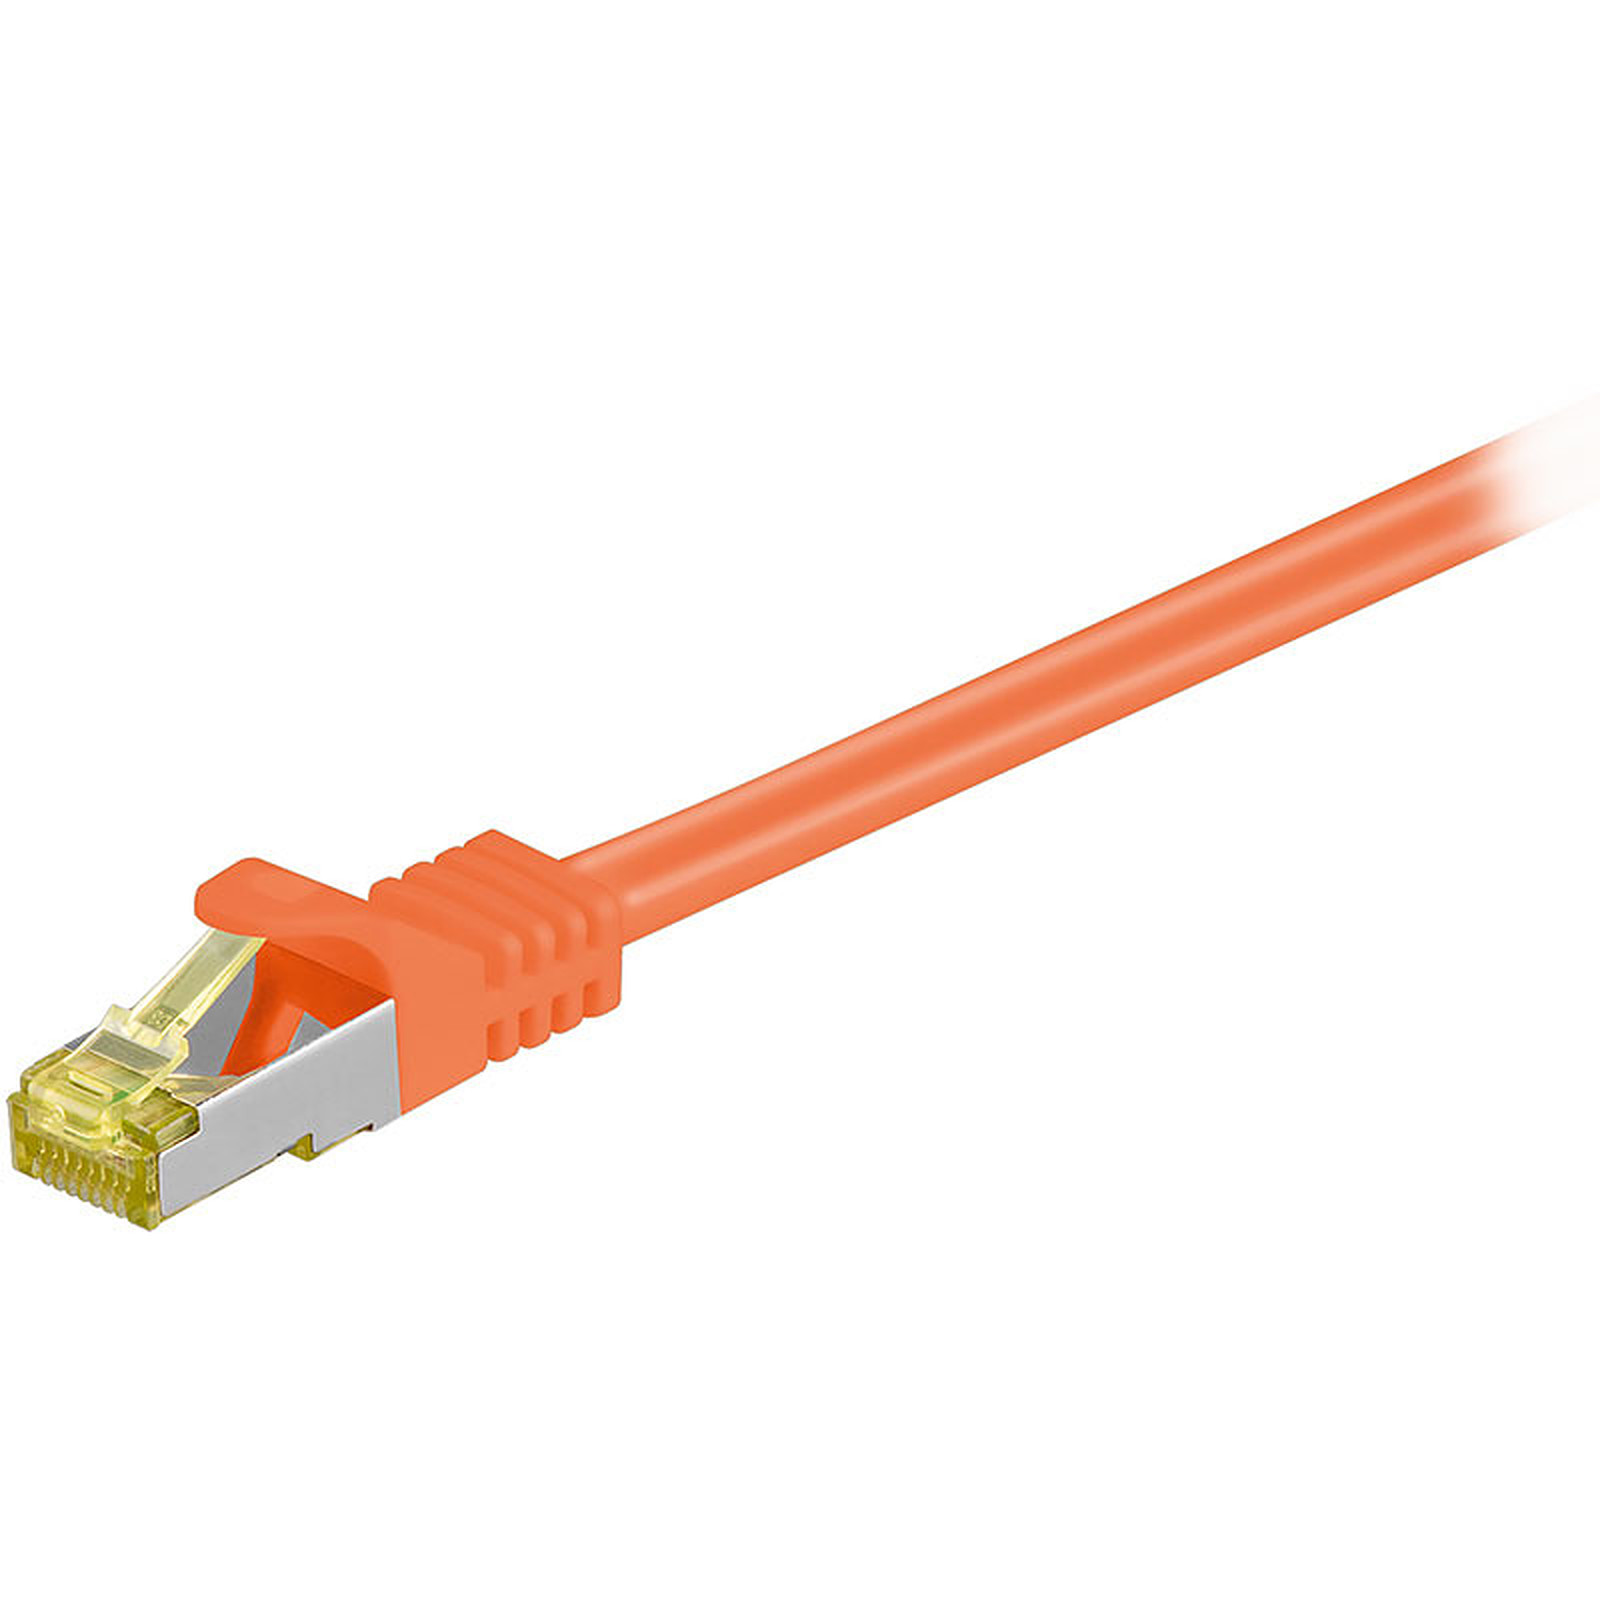 Cordon RJ45 categorie 7 S/FTP 1 m (Orange) - Cable RJ45 Generique